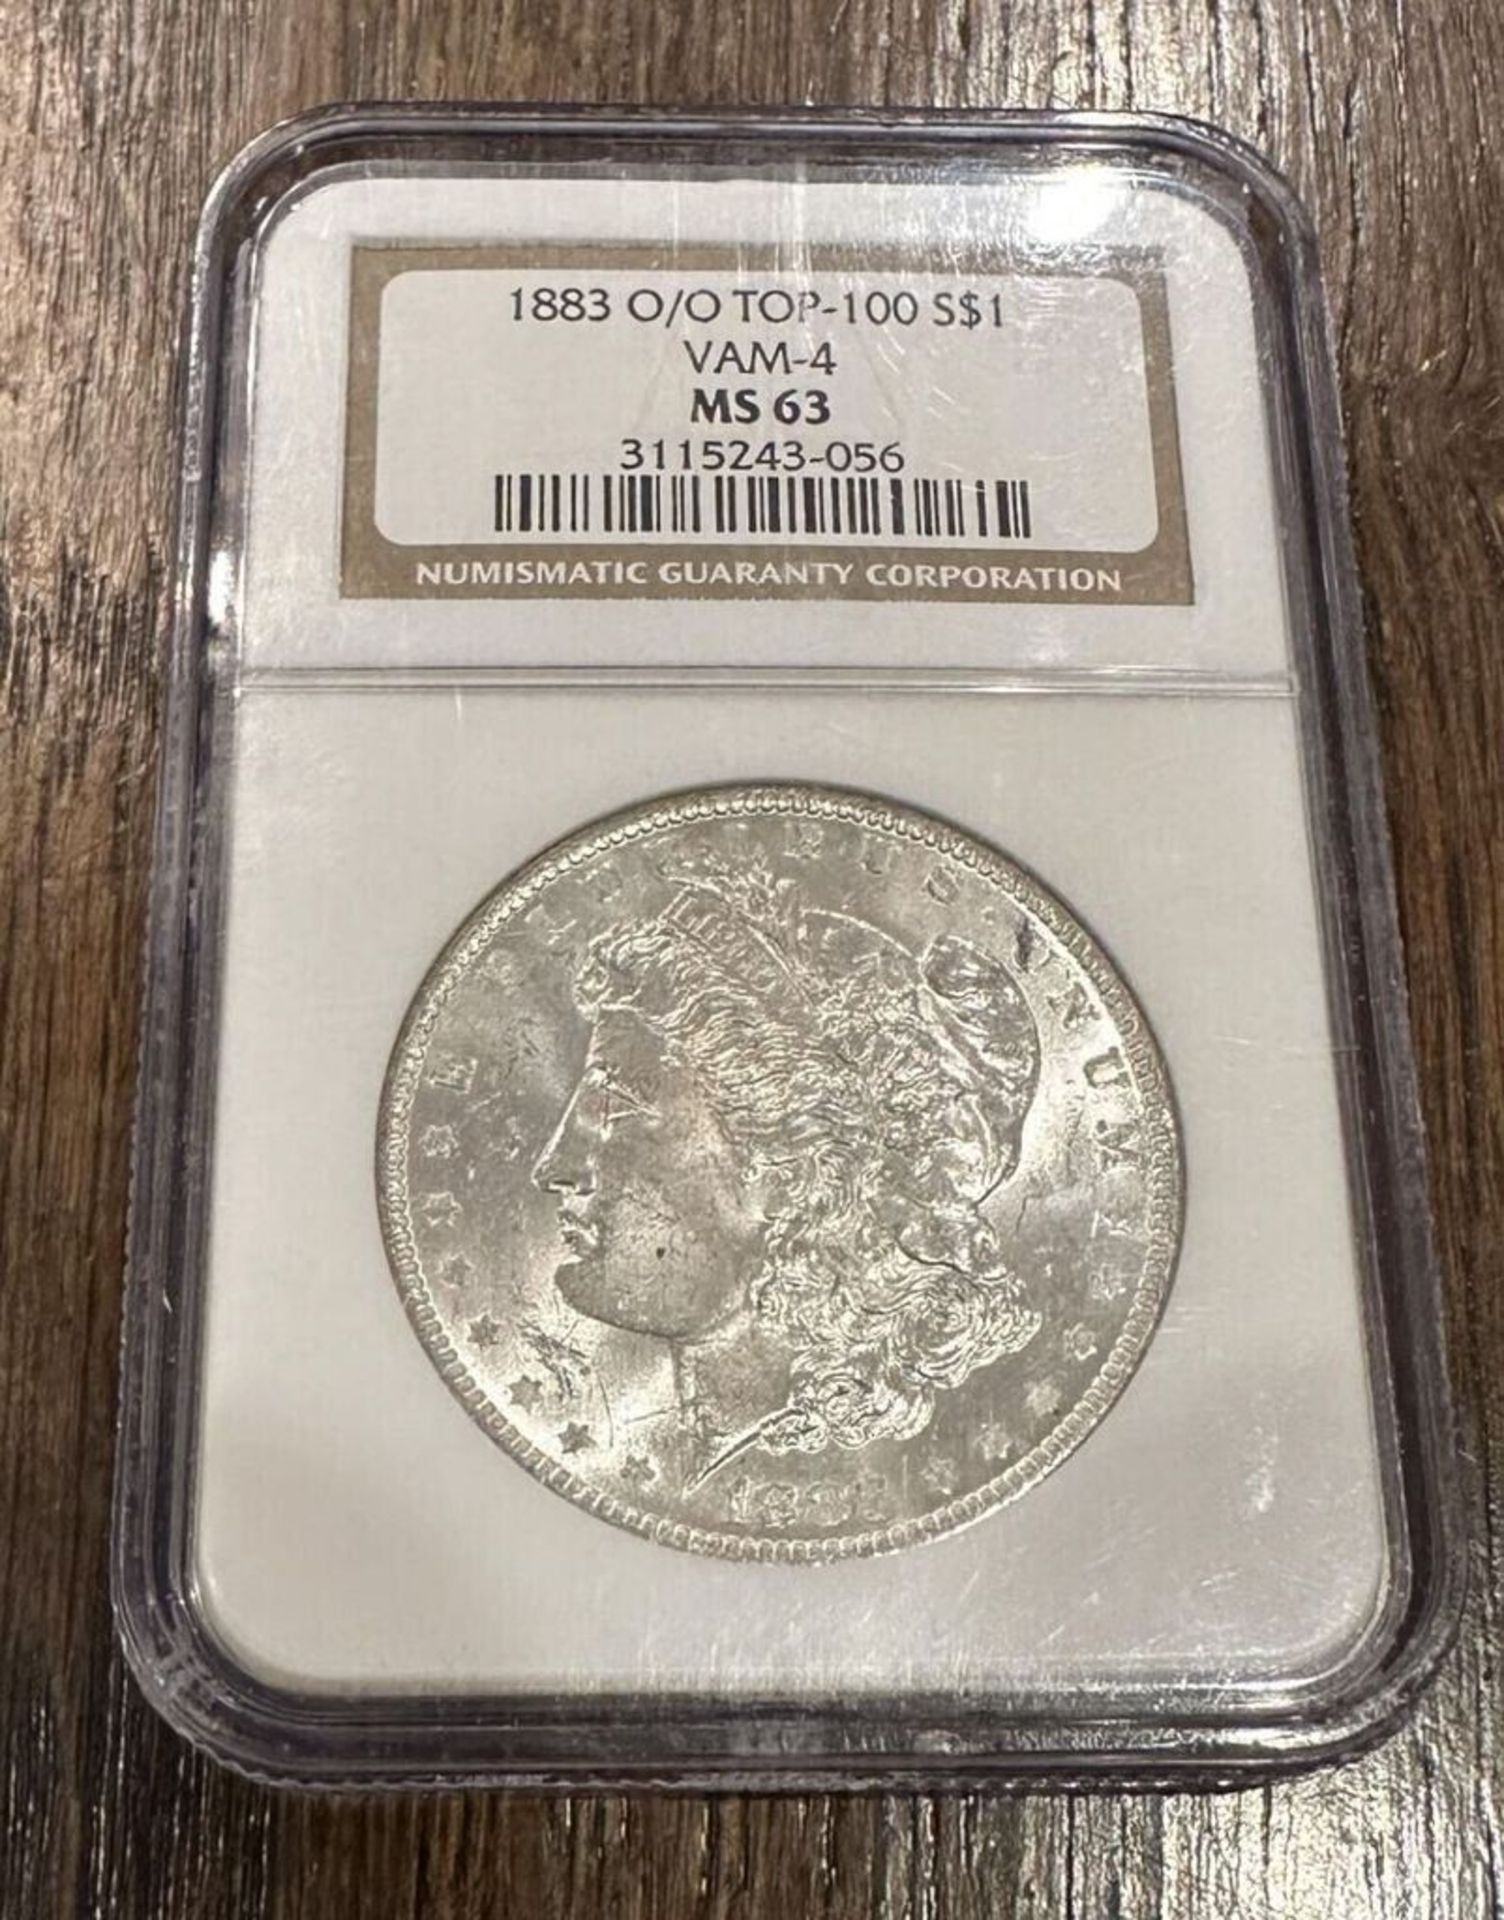 1883 O/O TOP-100 S$1 VAM-4 MS 63 COIN